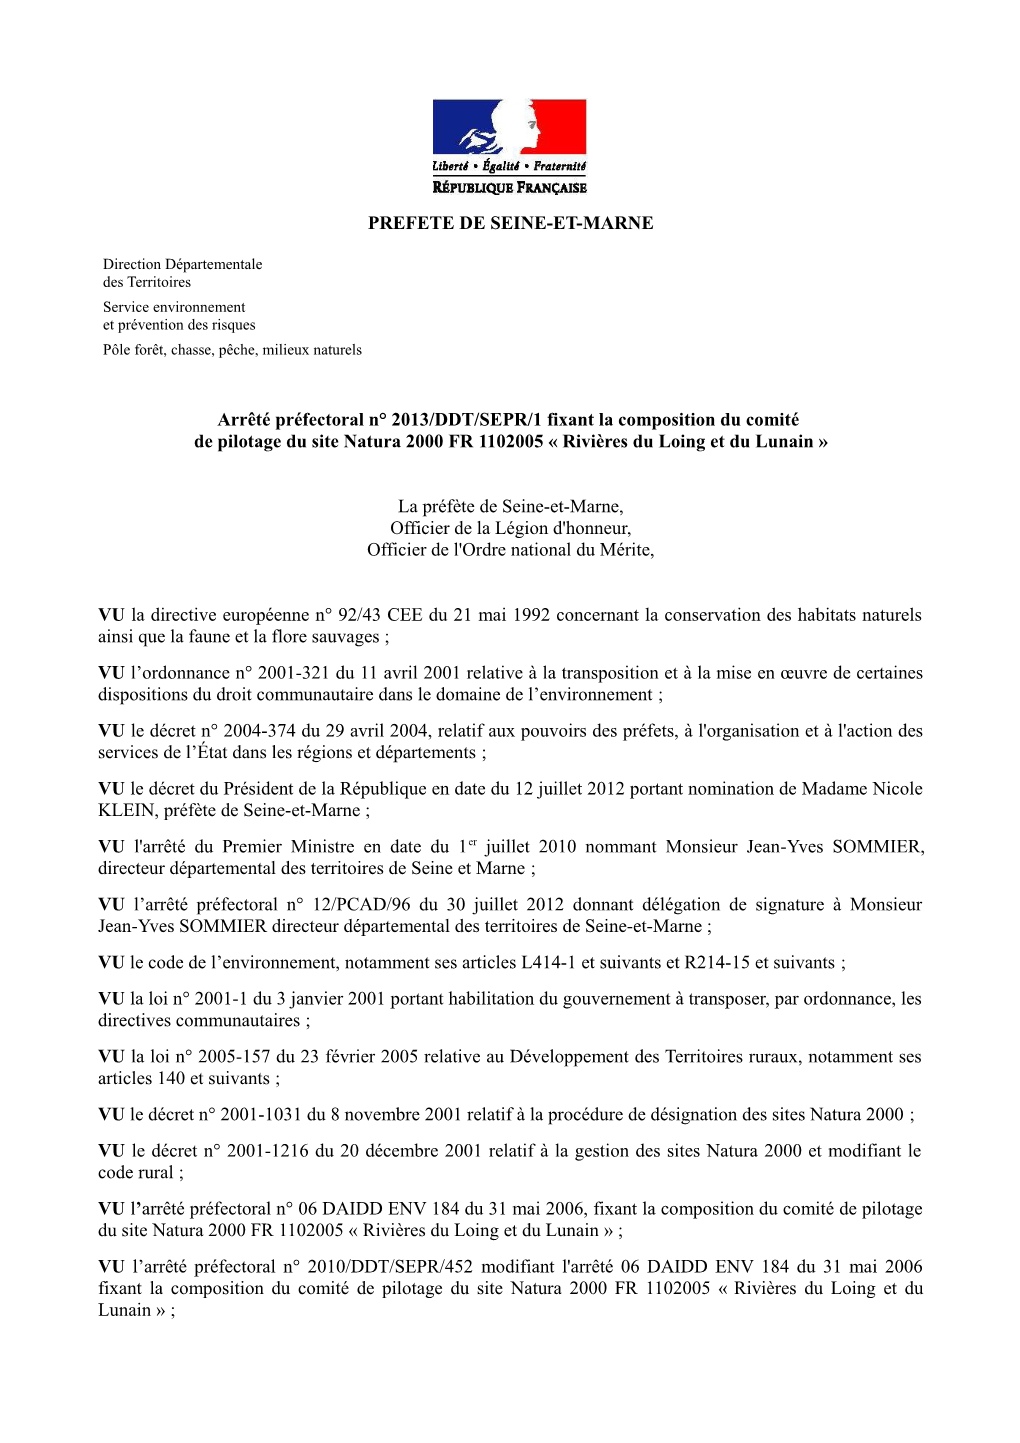 Arrêté Préfectoral N° 2013/DDT/SEPR/1 Fixant La Composition Du Comité De Pilotage Du Site Natura 2000 FR 1102005 « Rivières Du Loing Et Du Lunain »